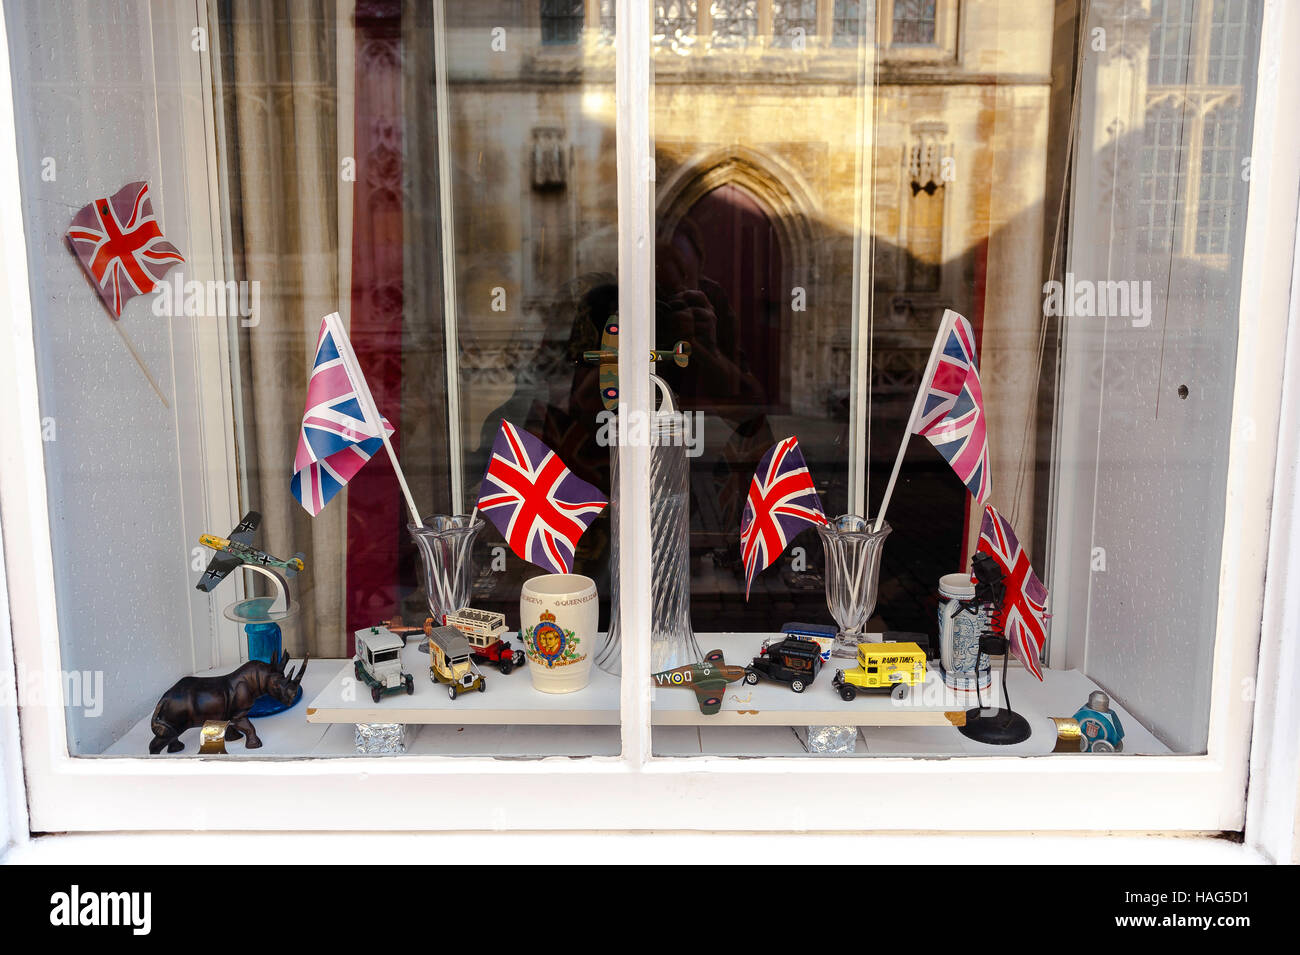 Britischer Patriotismus patriotisch, Ansicht einer Ausstellung britischer Flaggen und Ornamente in einem hohen Straßenfenster in Bury St Edmunds, Suffolk, Großbritannien. Stockfoto